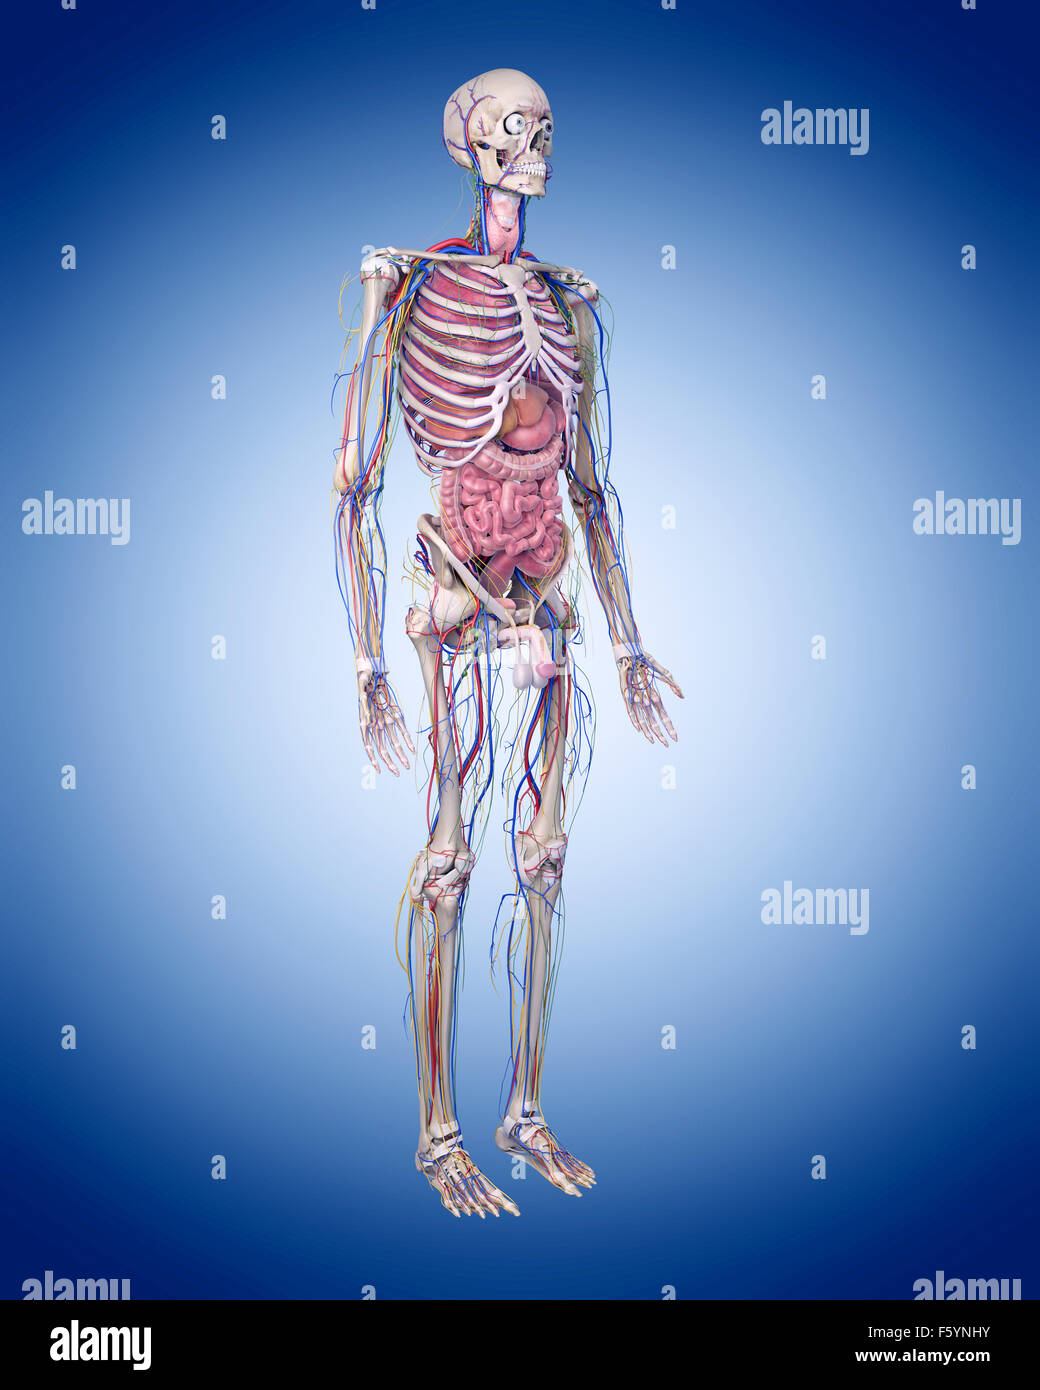 Anatomia umana immagini e fotografie stock ad alta risoluzione - Alamy